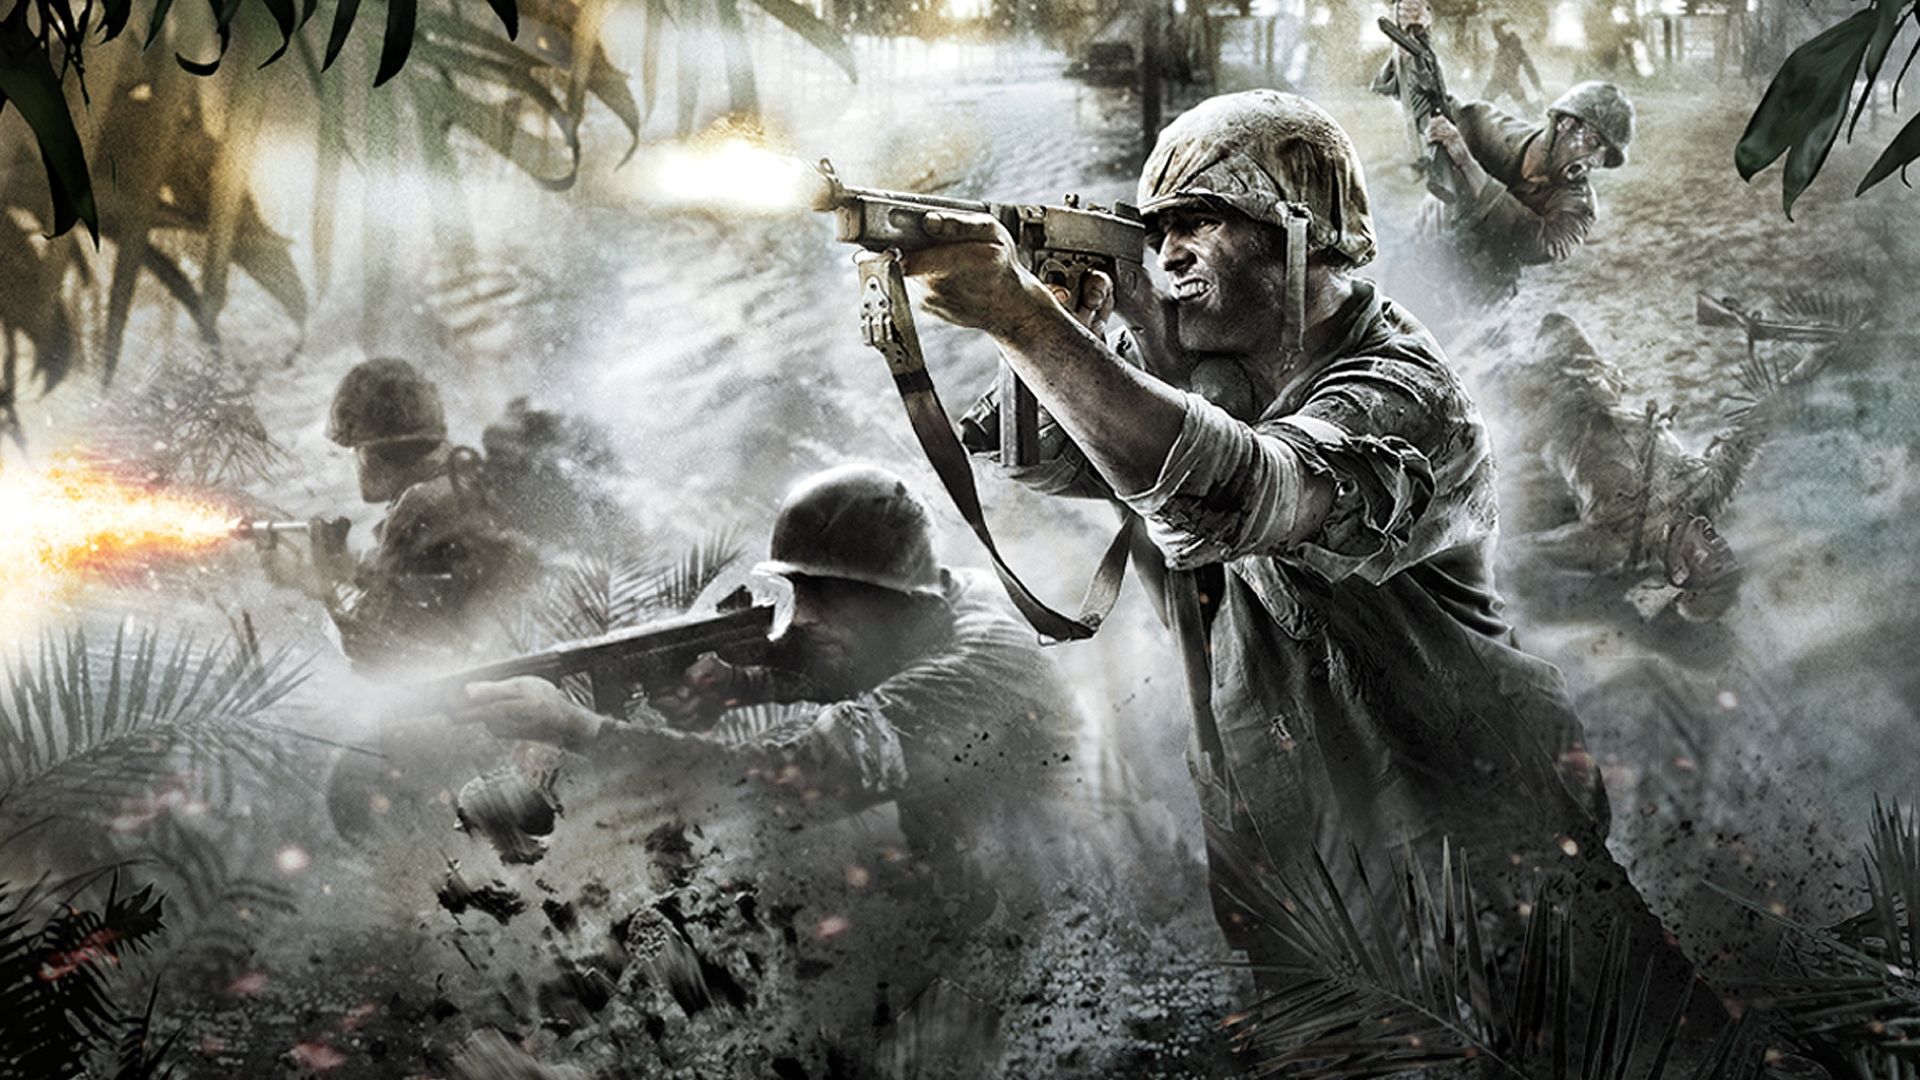 guerra wallpaper hd,gioco di avventura e azione,gioco per pc,soldato,fotografia,illustrazione